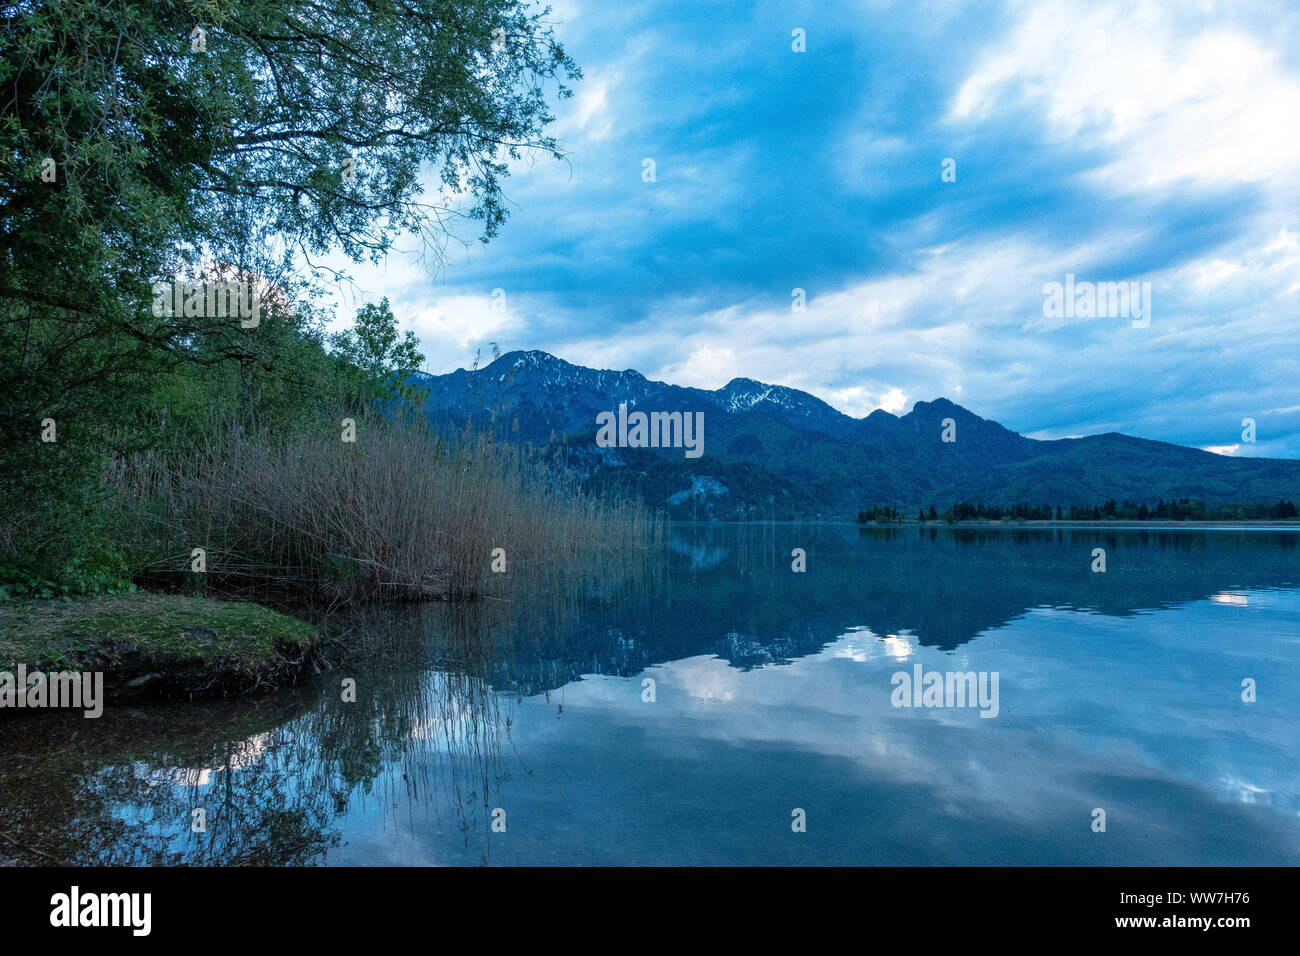 In Germania, in Baviera, Kochel am See, atmosfera serale presso il lago Kochelsee con una vista del Herzogstand Foto Stock